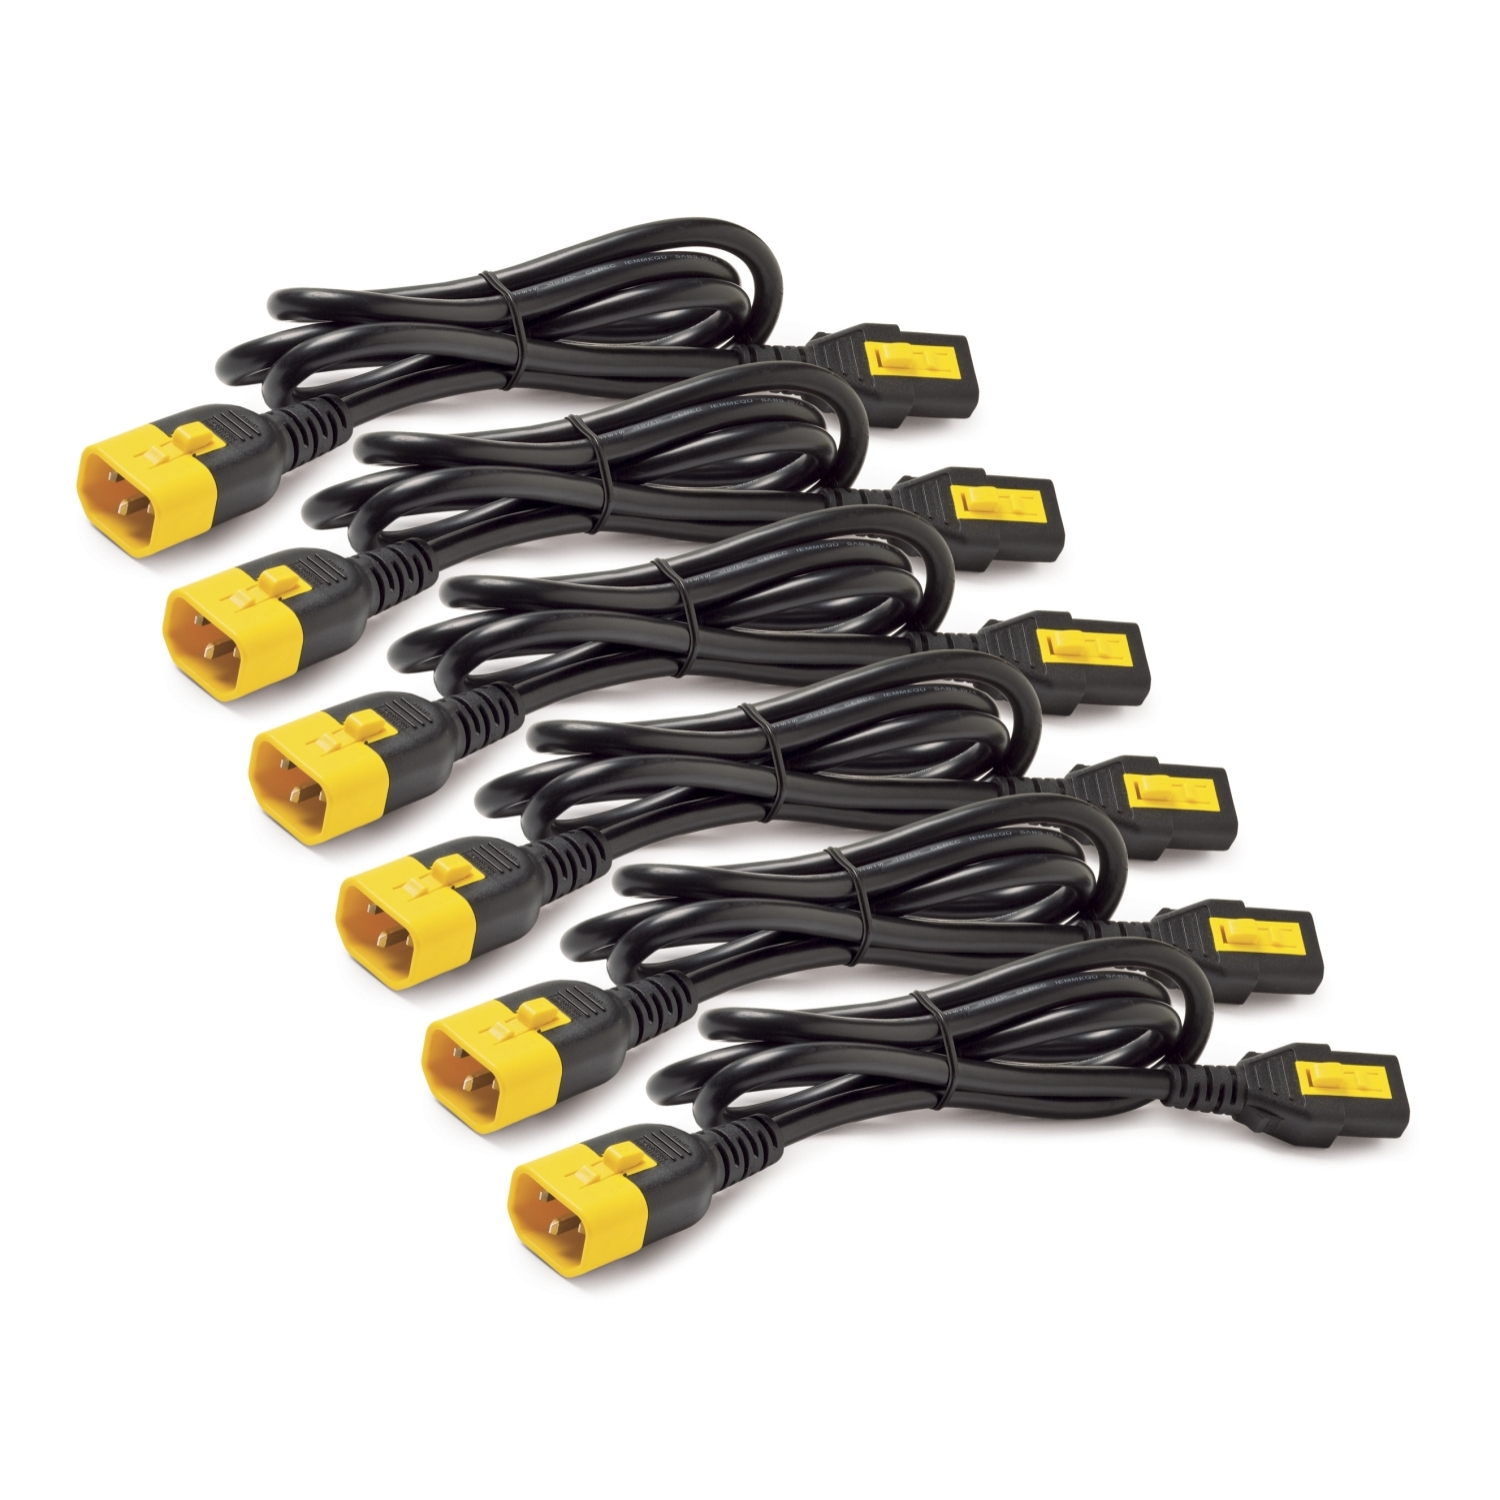 Photos - Cable (video, audio, USB) APC AP8704S-WWX590 power cable Blue 1.22 m C13 coupler C14 coupler 